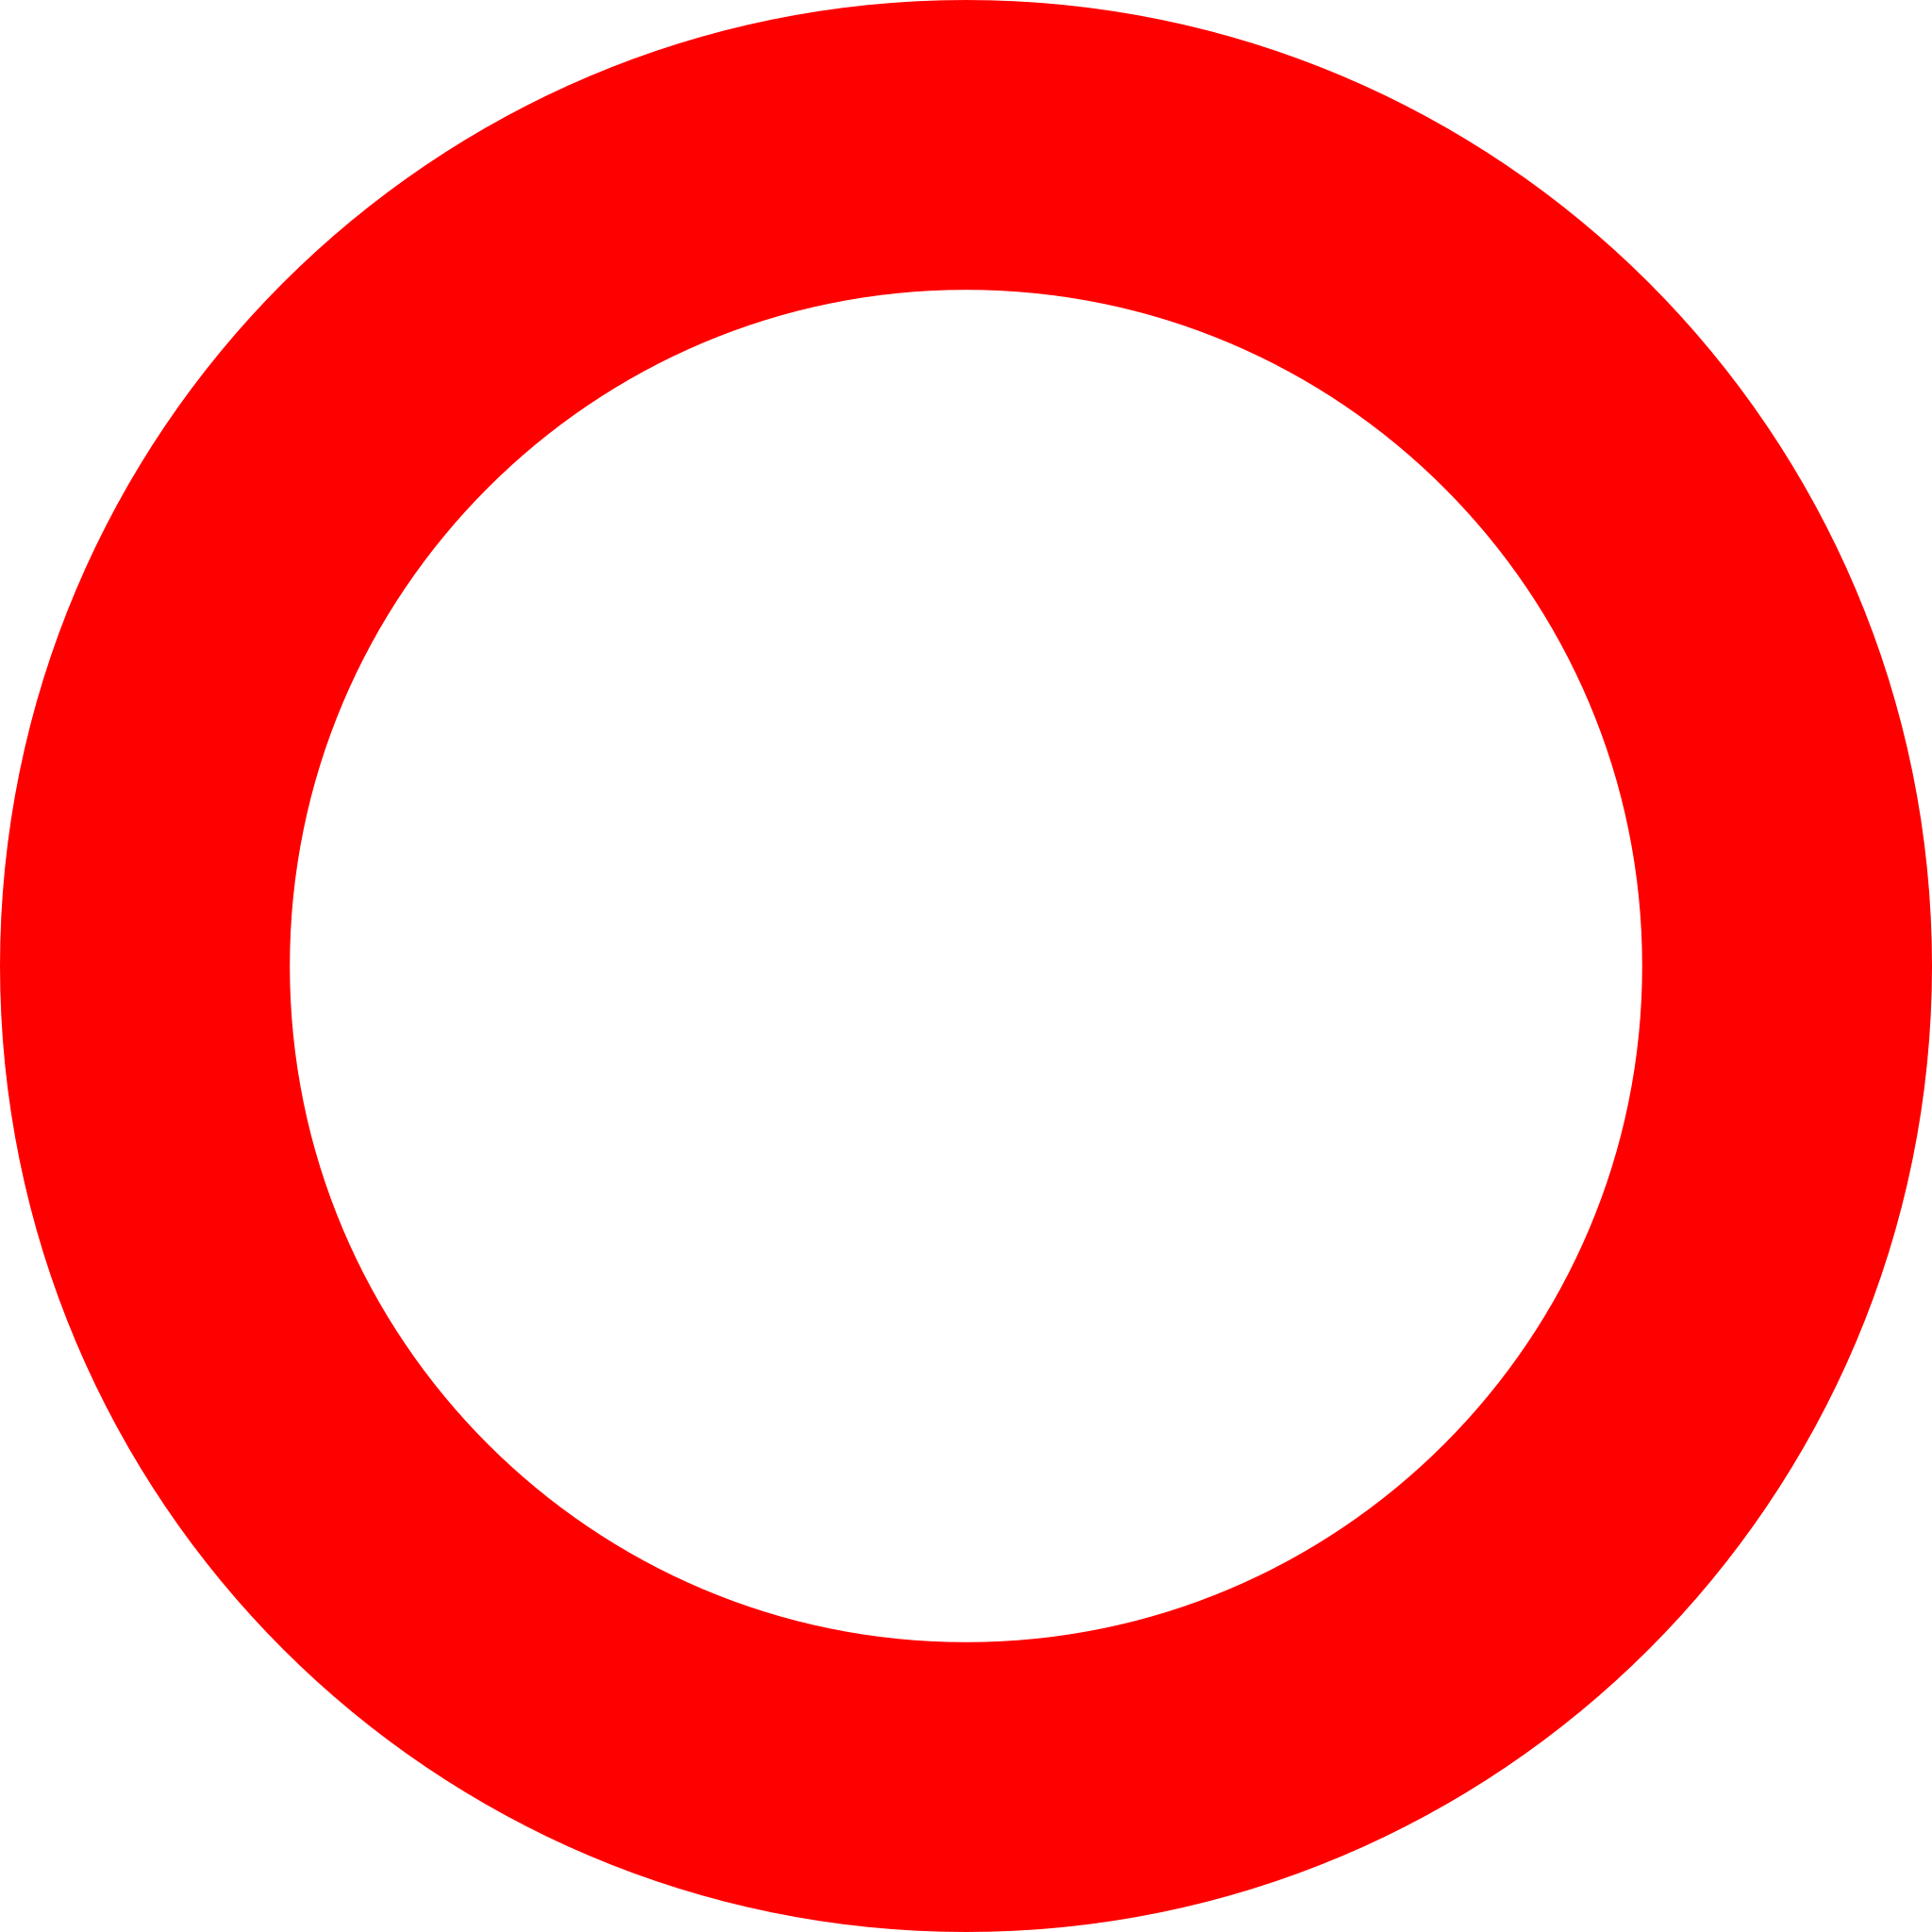 Hình tròn đỏ rực rỡ sẽ làm bạn say mê với sự đơn giản nhưng đầy tinh tế. Nhấn vào hình ảnh để tận hưởng vẻ đẹp tròn đầy của nó.